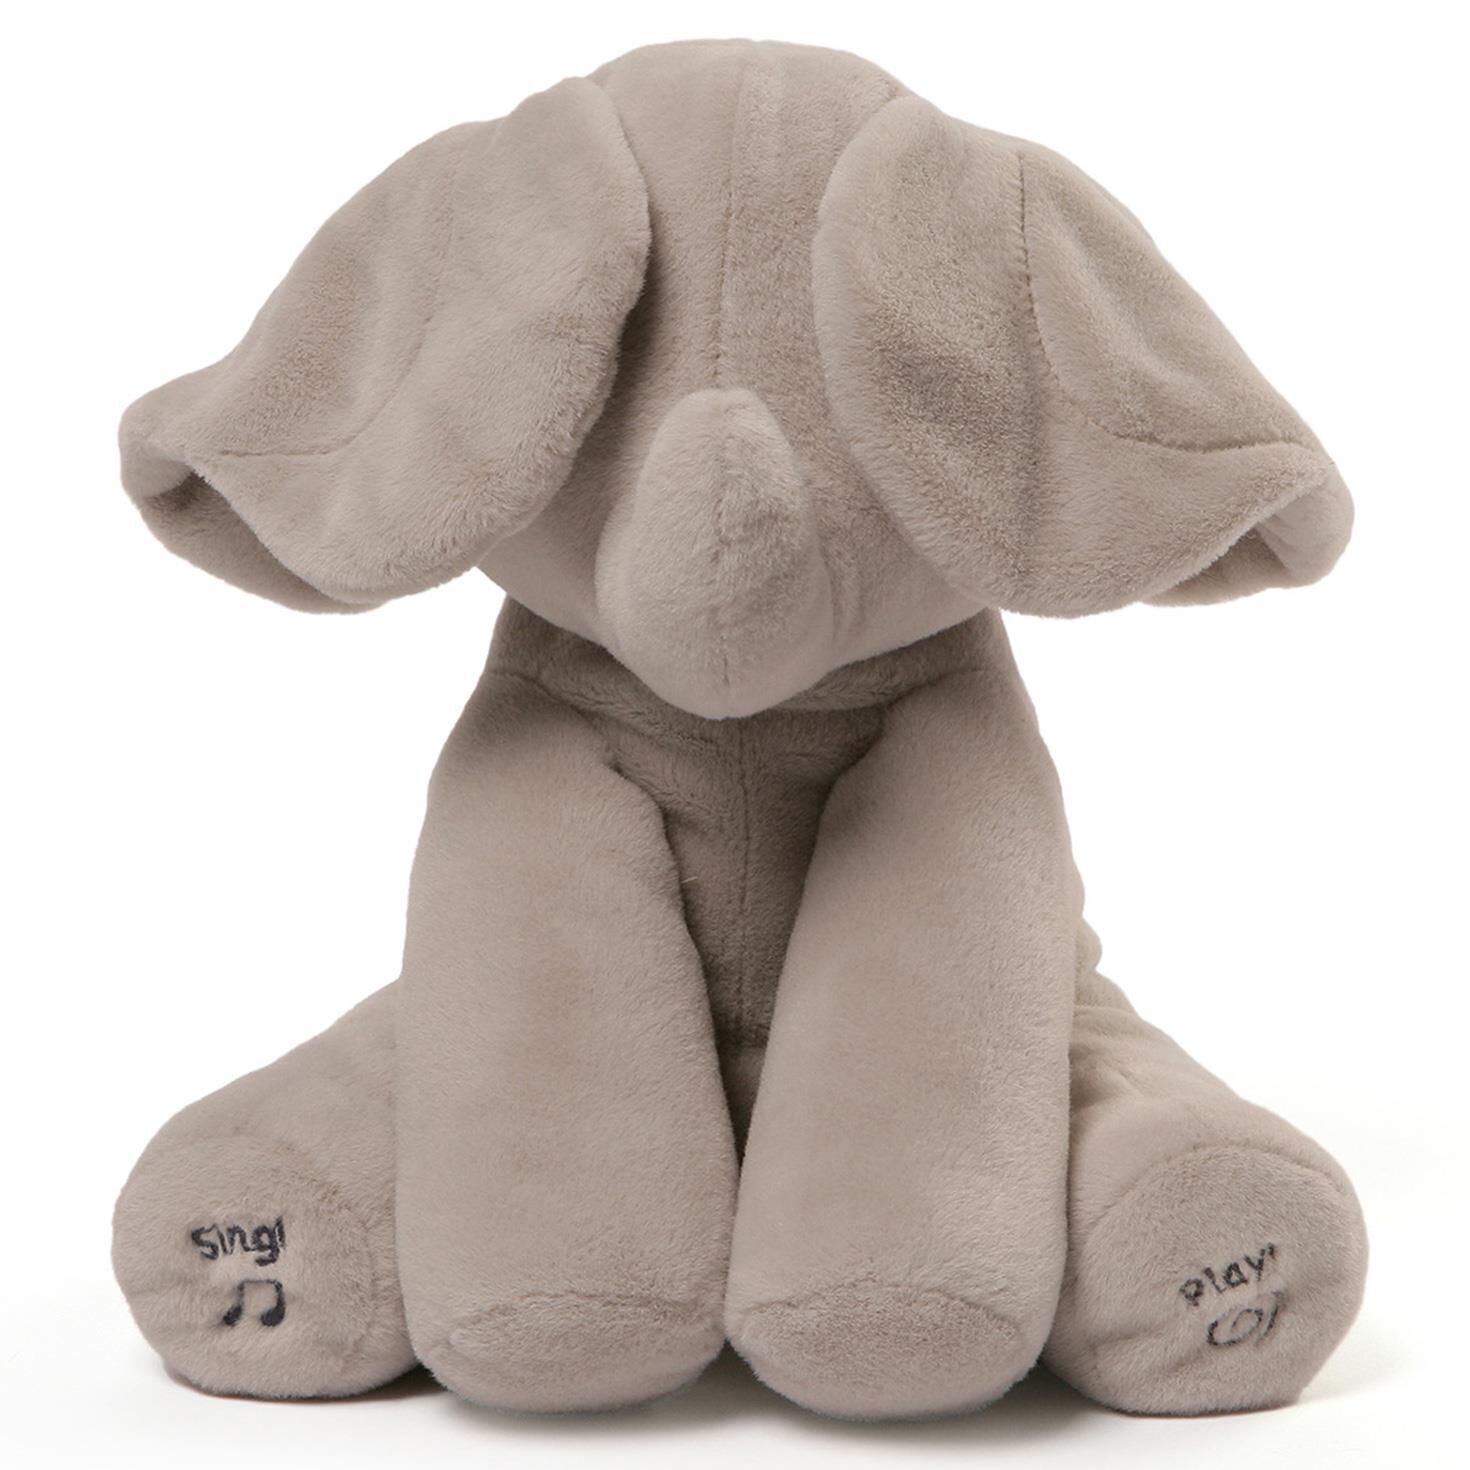 floppy ear elephant toy